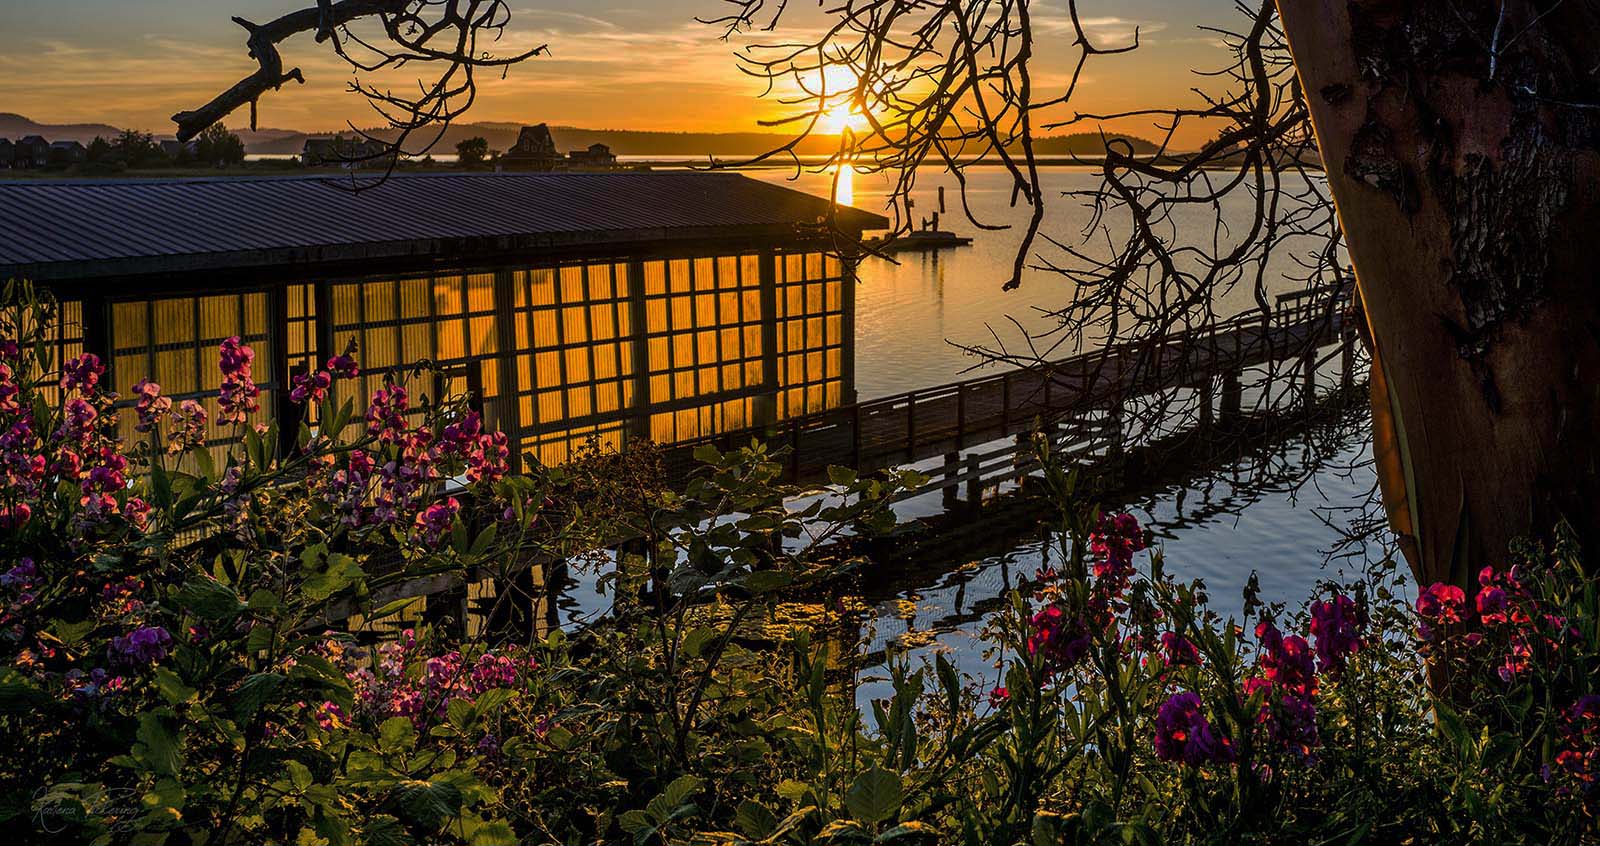 Lopez island sunset boat house moorage bay